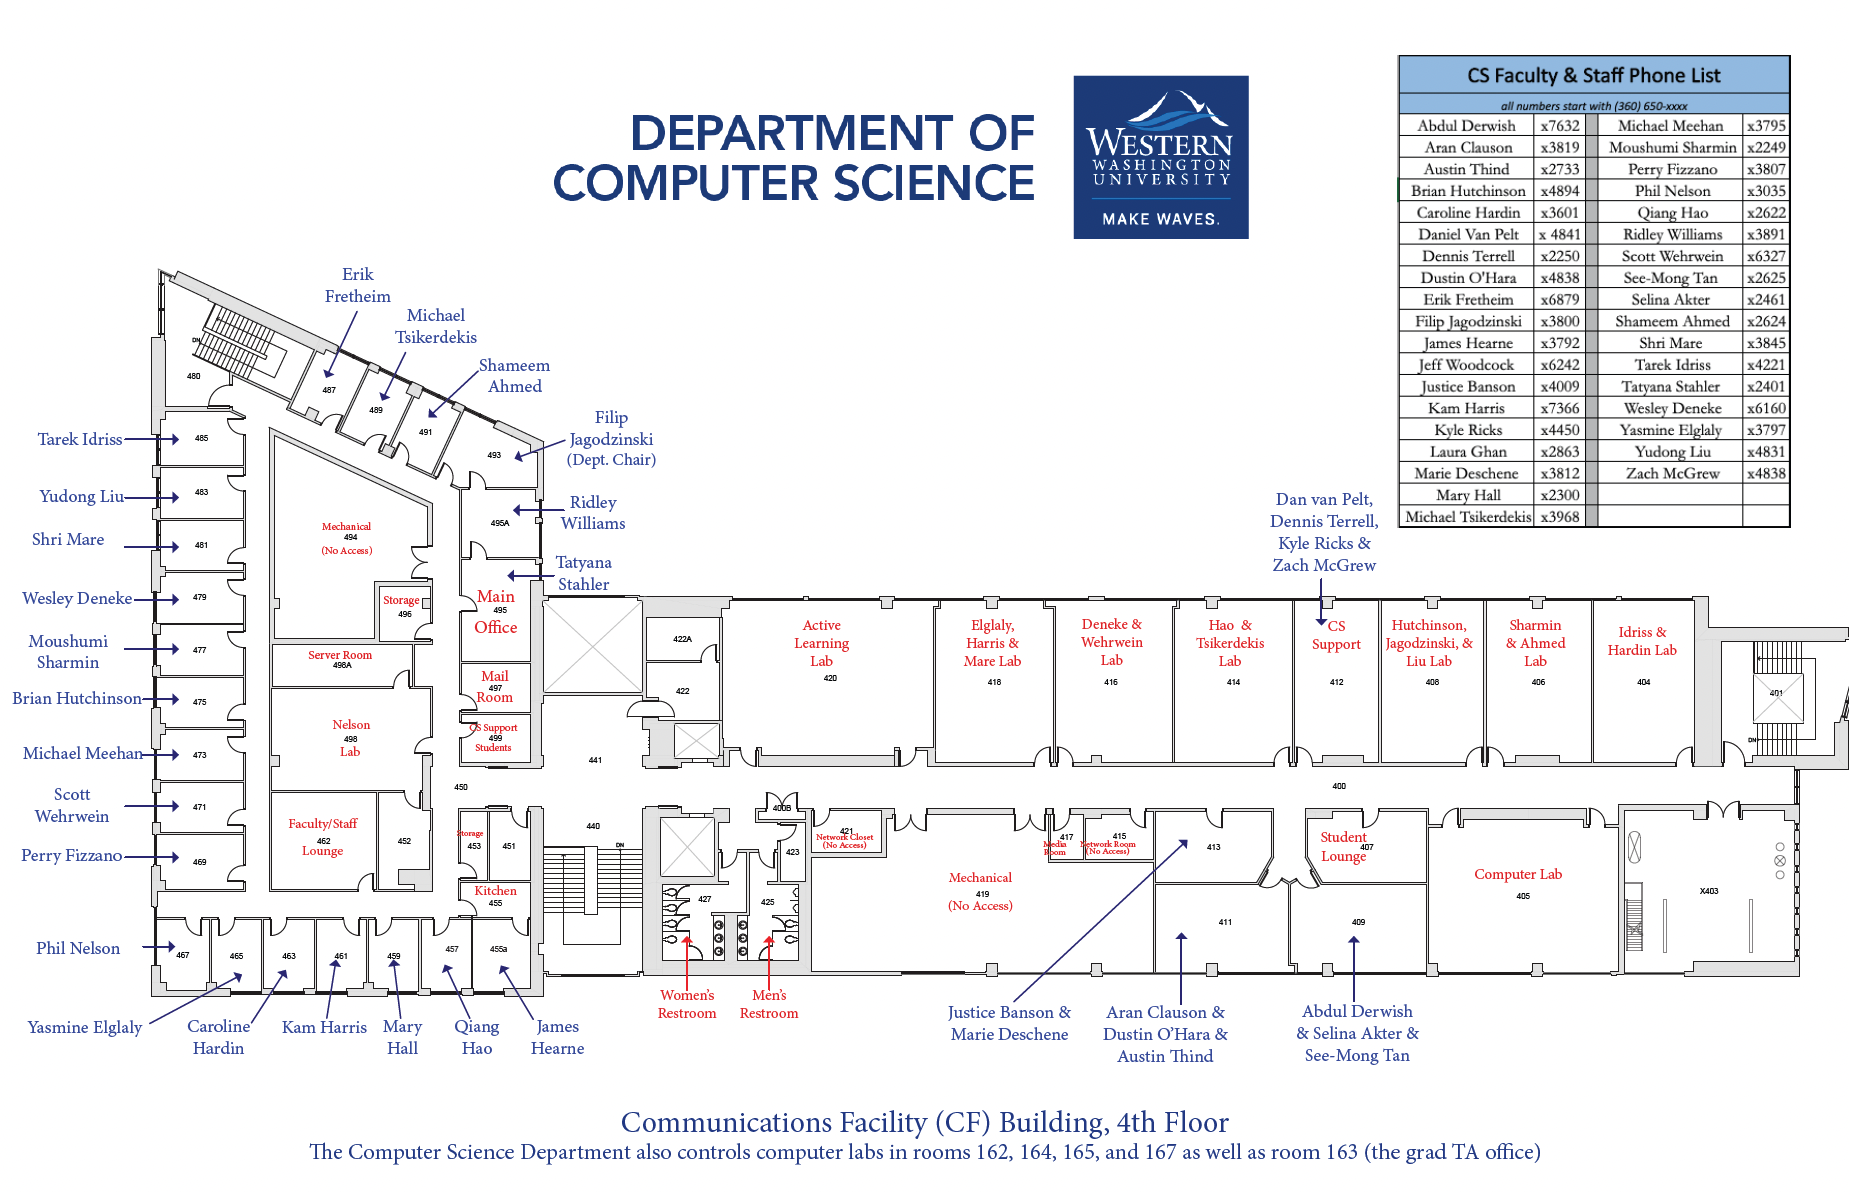 Department Map, 4th Floor of CF Building